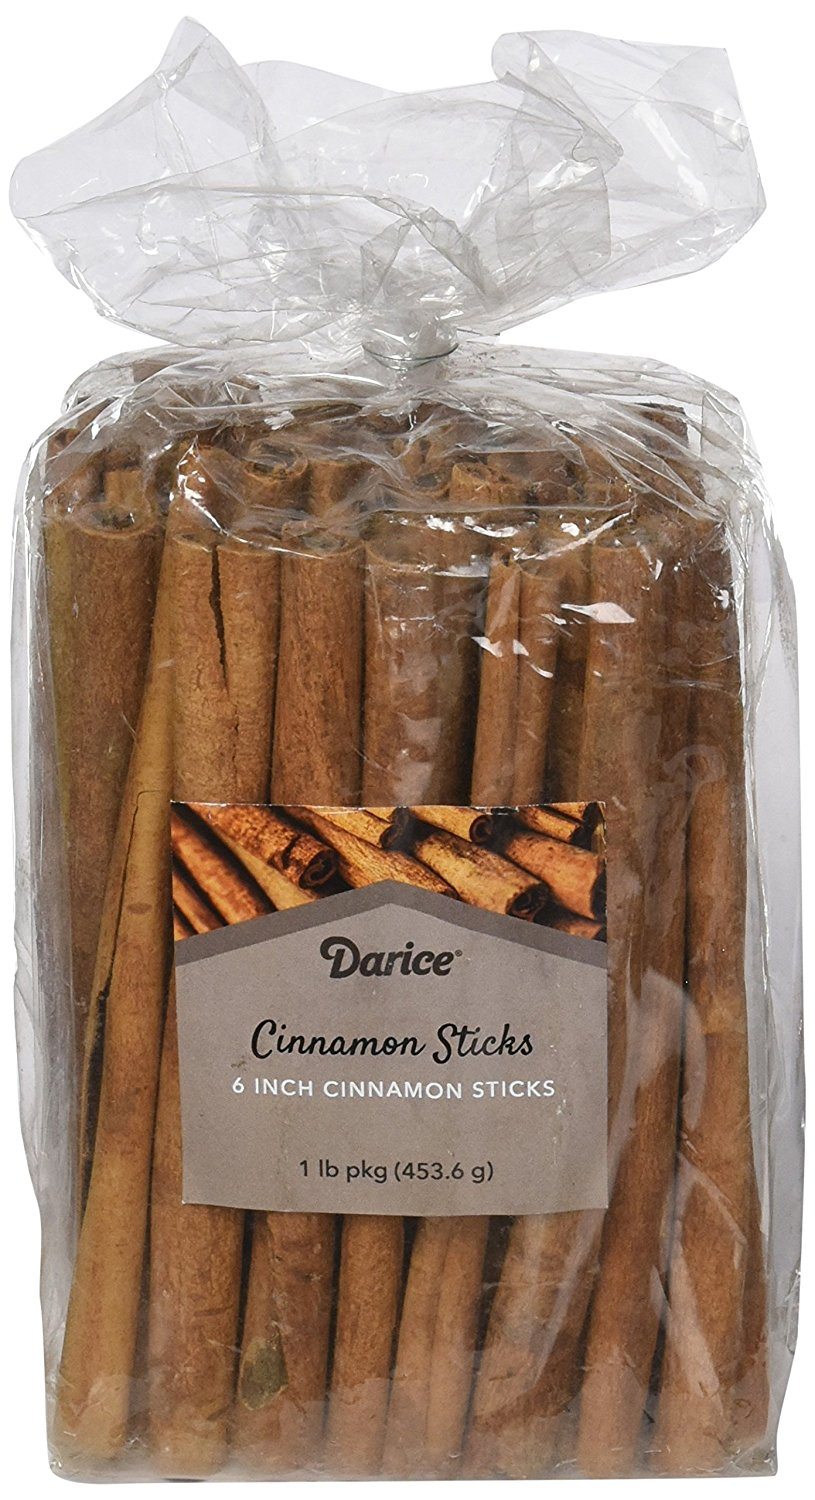 Winter Cocktail Bar Cart Essentials | Cinnamon Sticks For Garnish